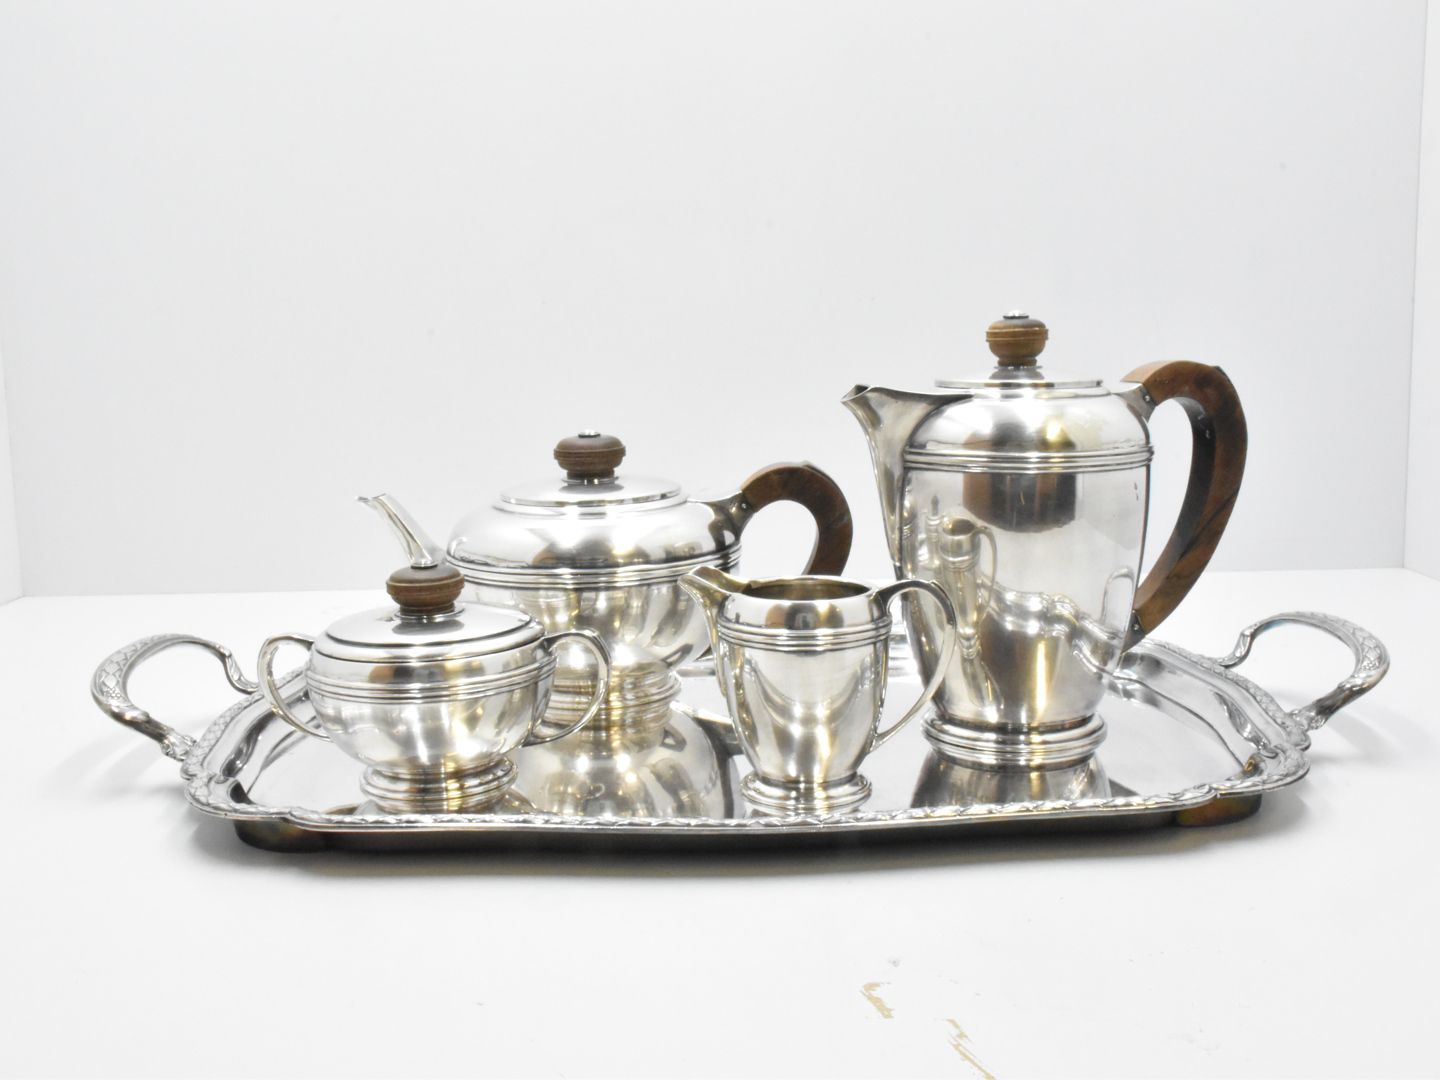 Null 威斯克曼装饰艺术风格的银白色金属四件套餐具，标有托盘字样